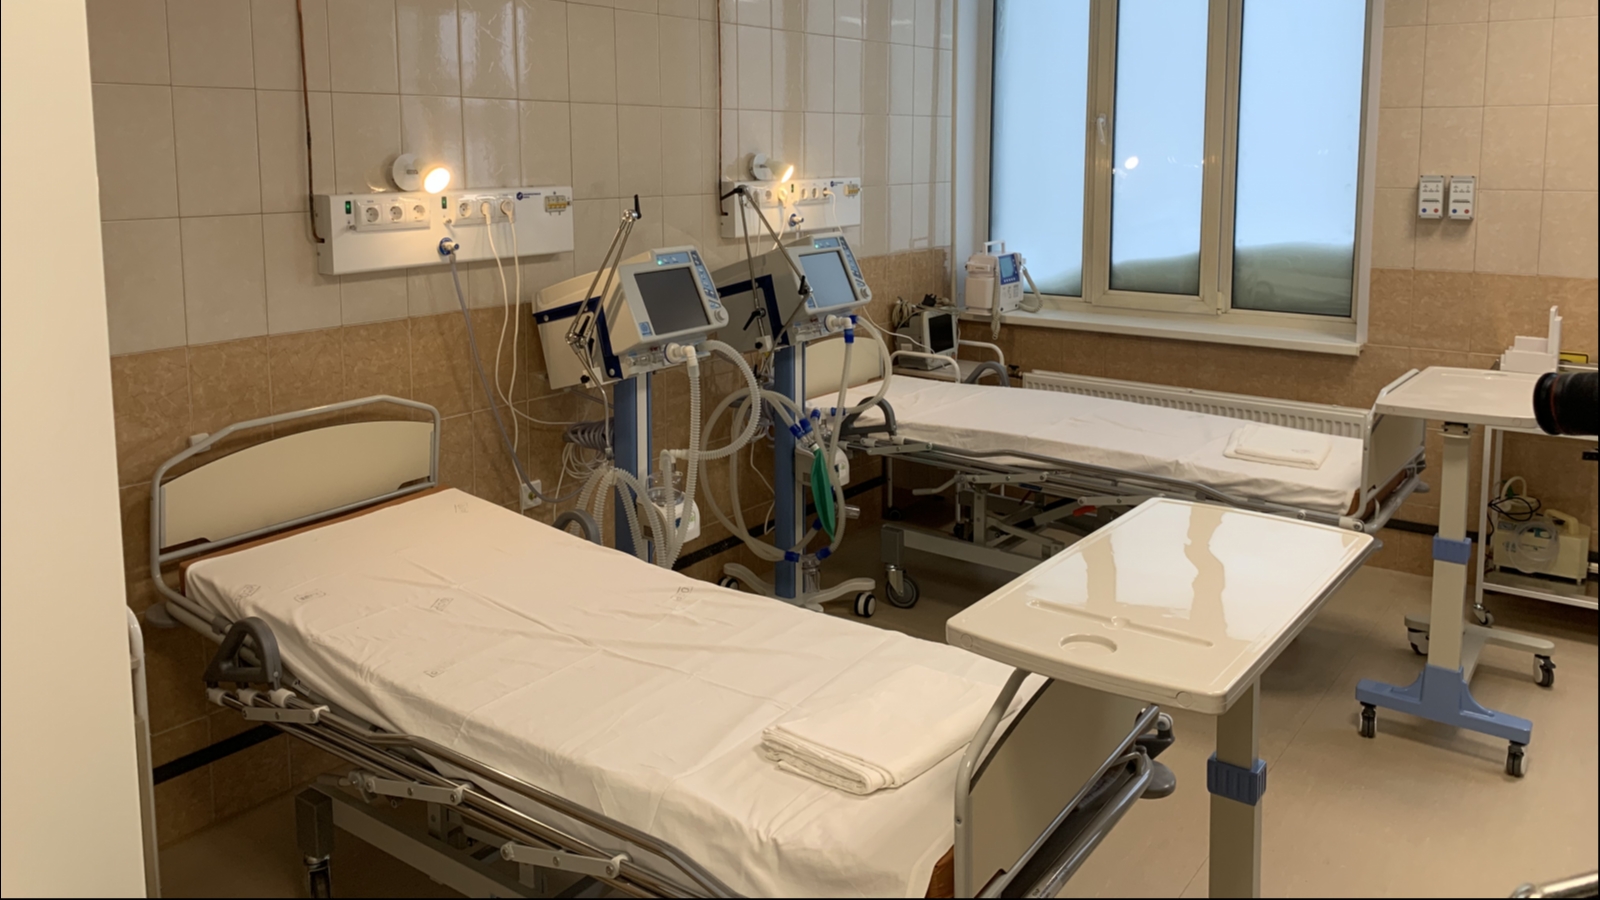 Администрация Печенгской больницы извинилась за ошибку